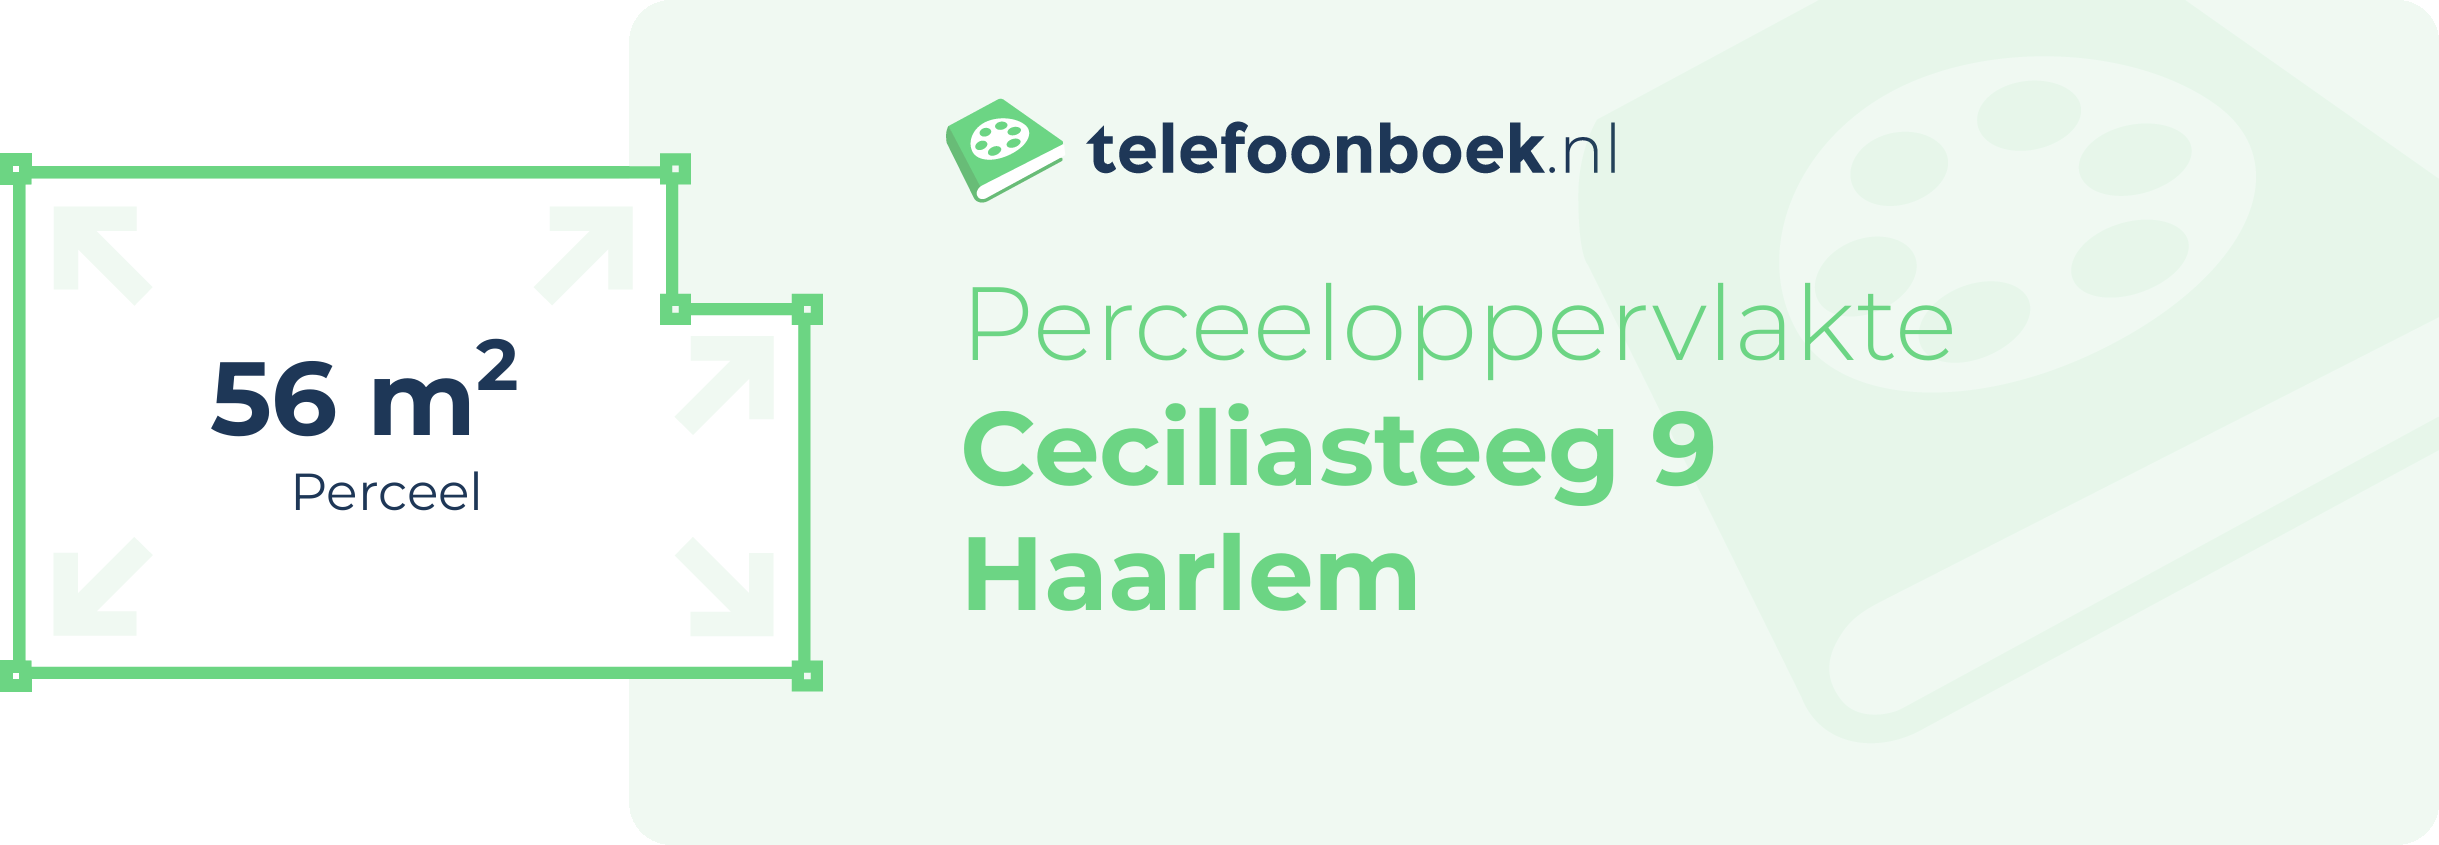 Perceeloppervlakte Ceciliasteeg 9 Haarlem